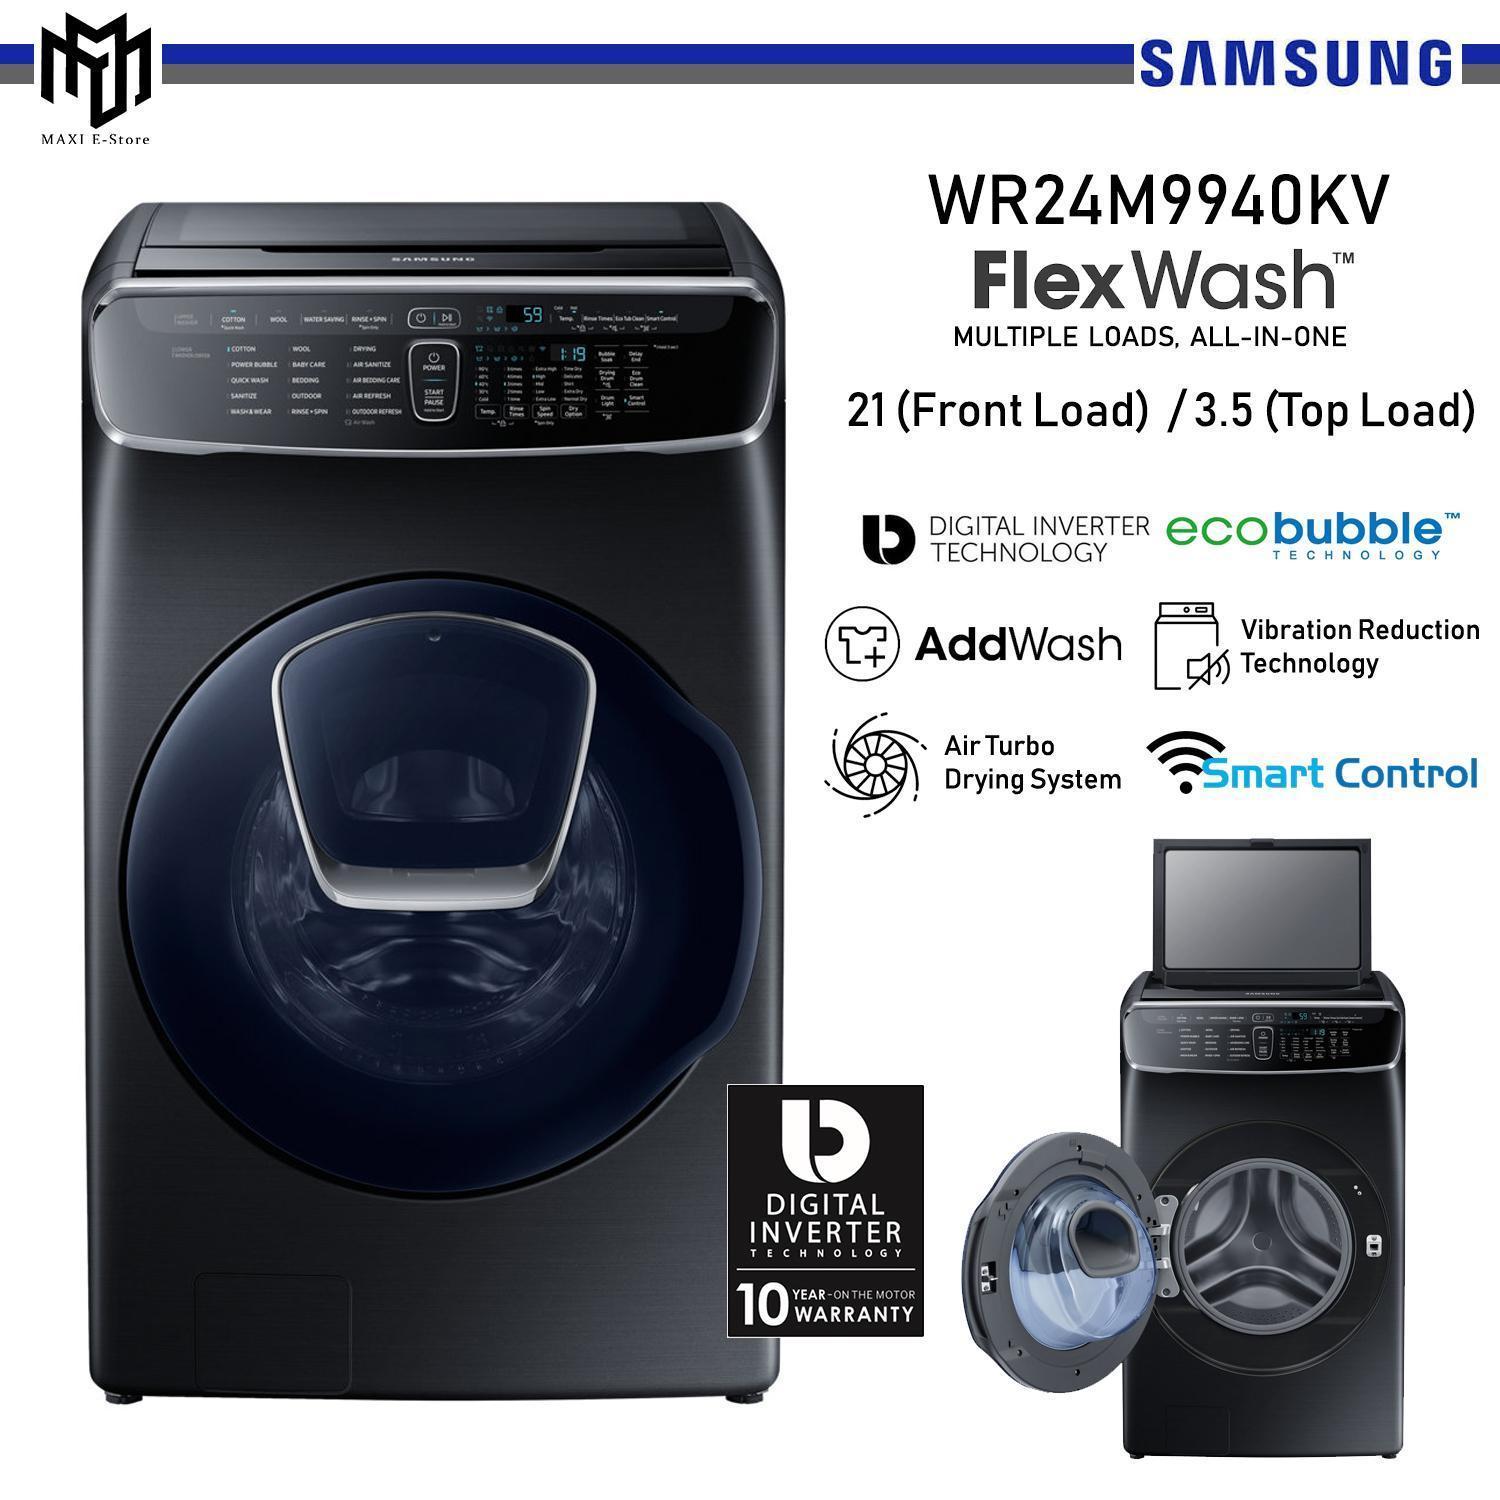 Công nghệ Air Wash trên máy giặt SamSung giúp máy giặt có thể làm sạch và khử mùi